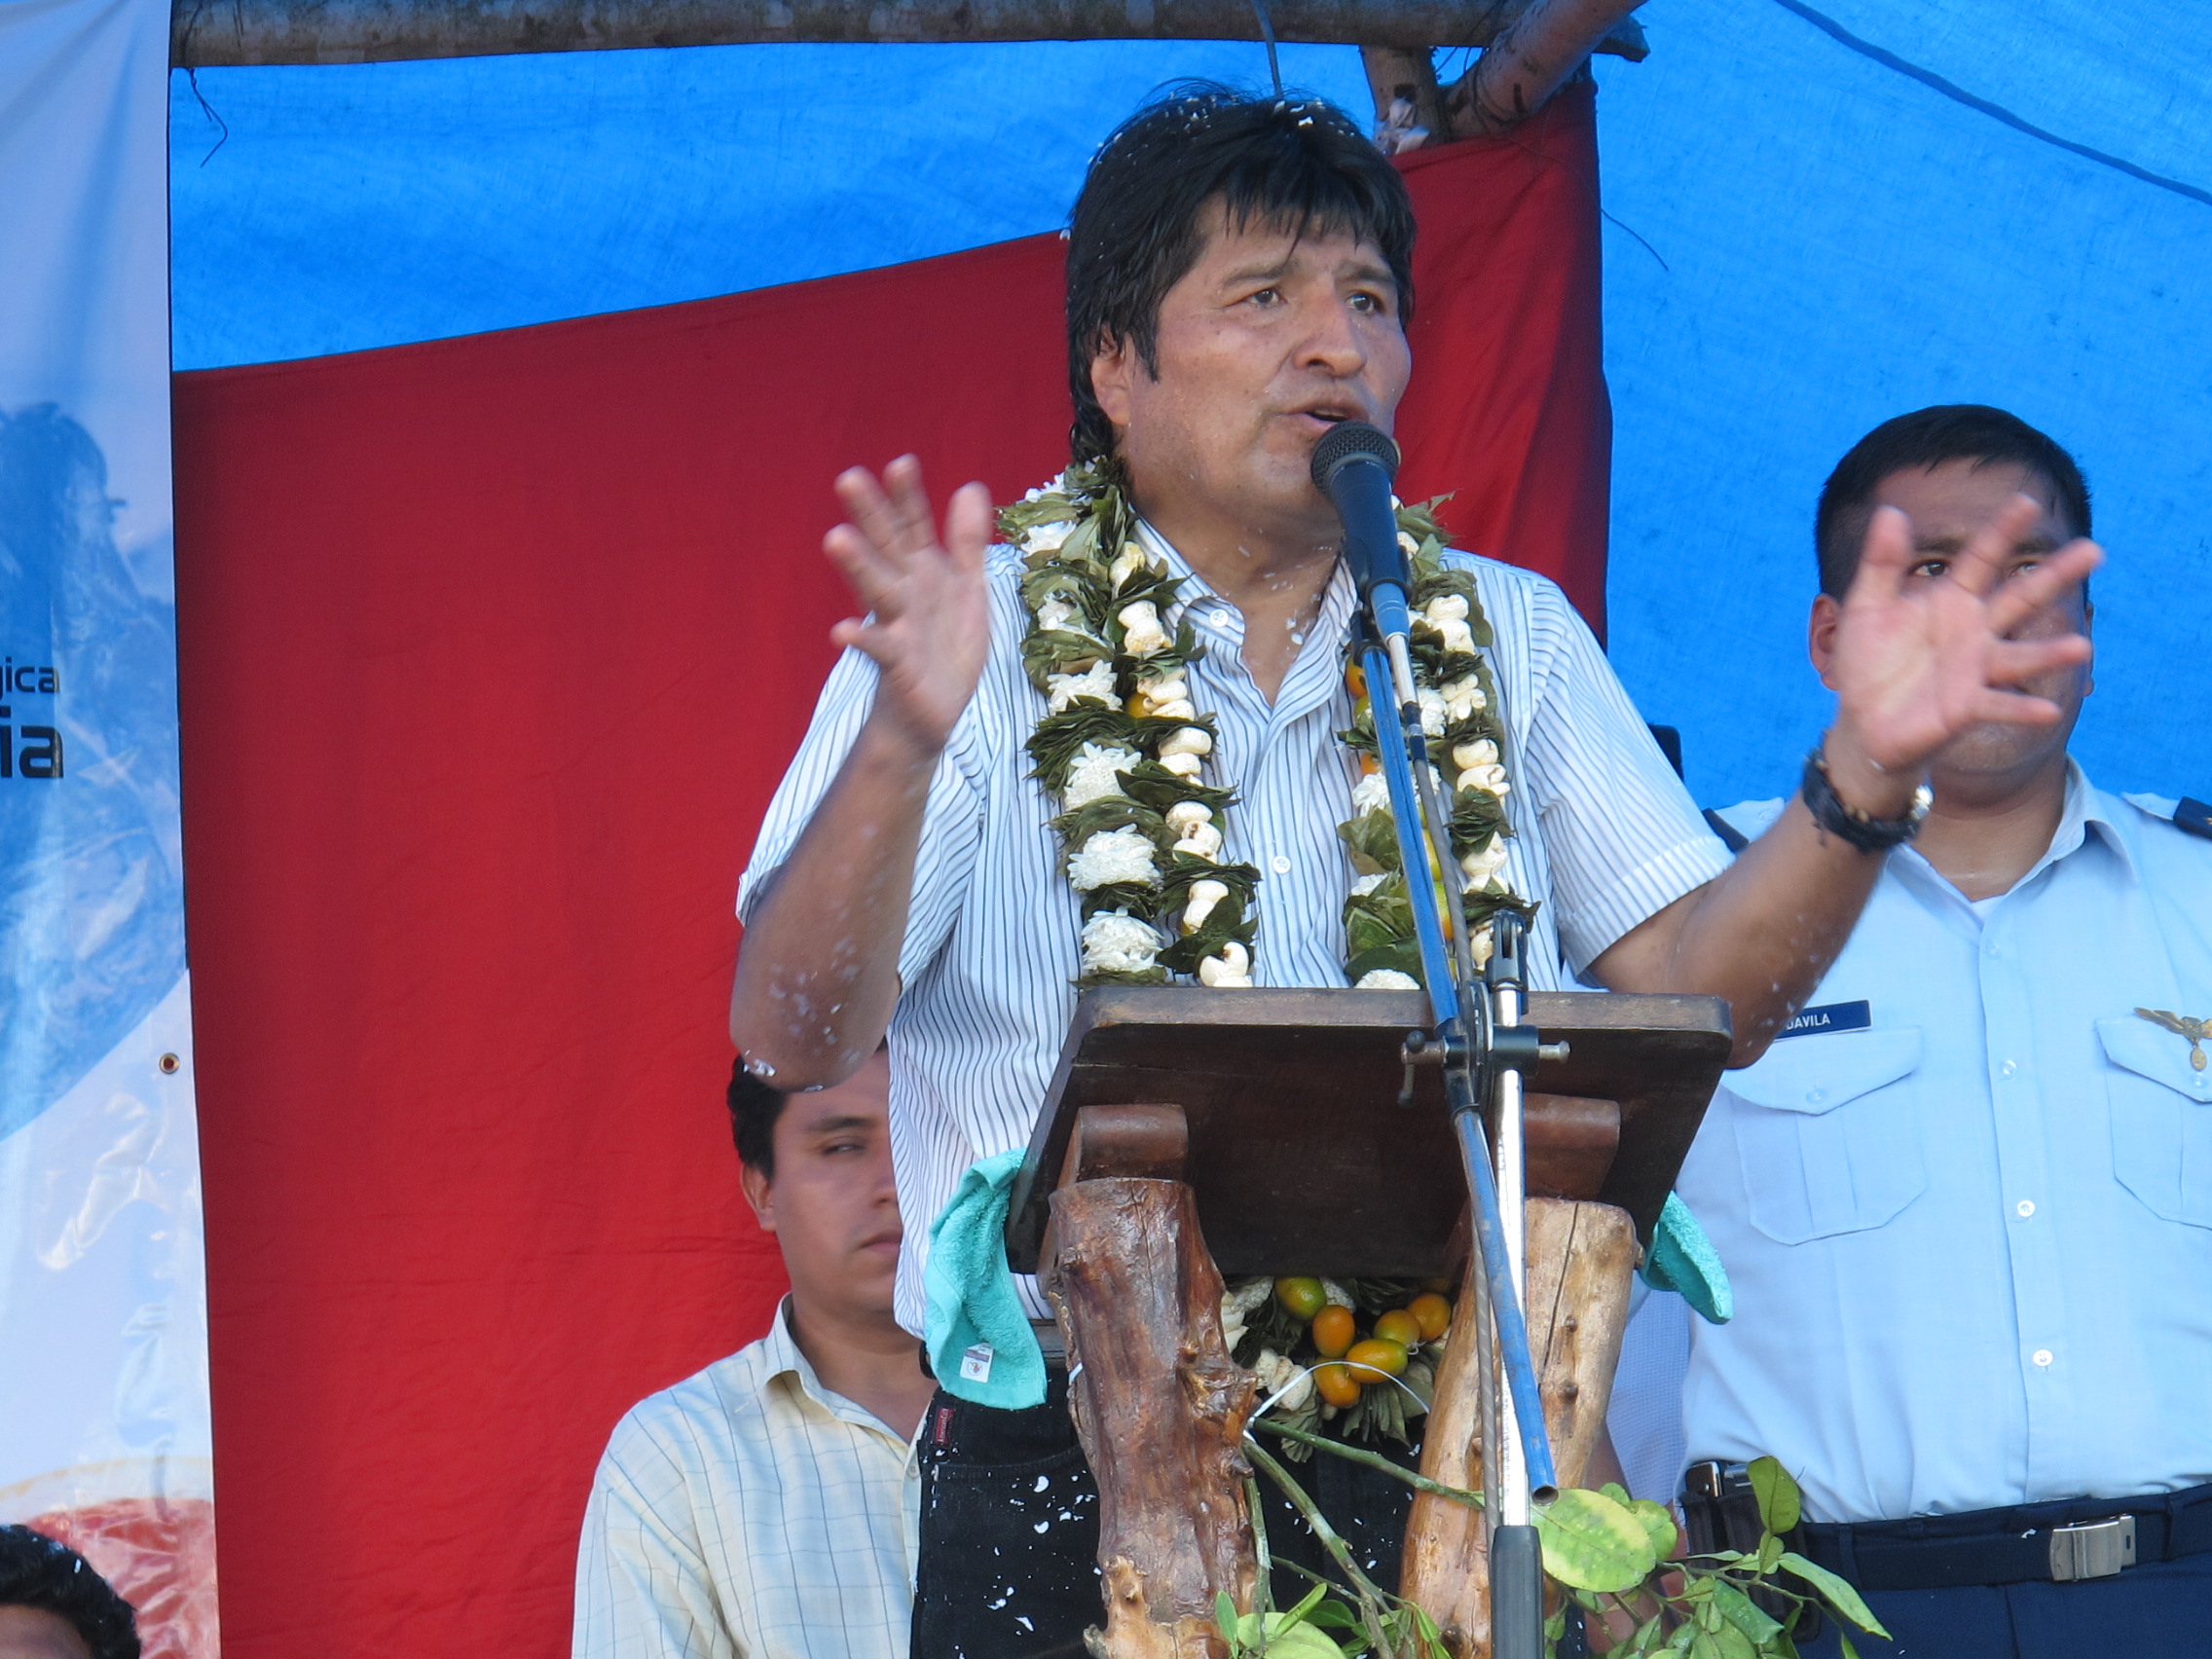 Bolivia judge cancels Morales arrest warrant following elections